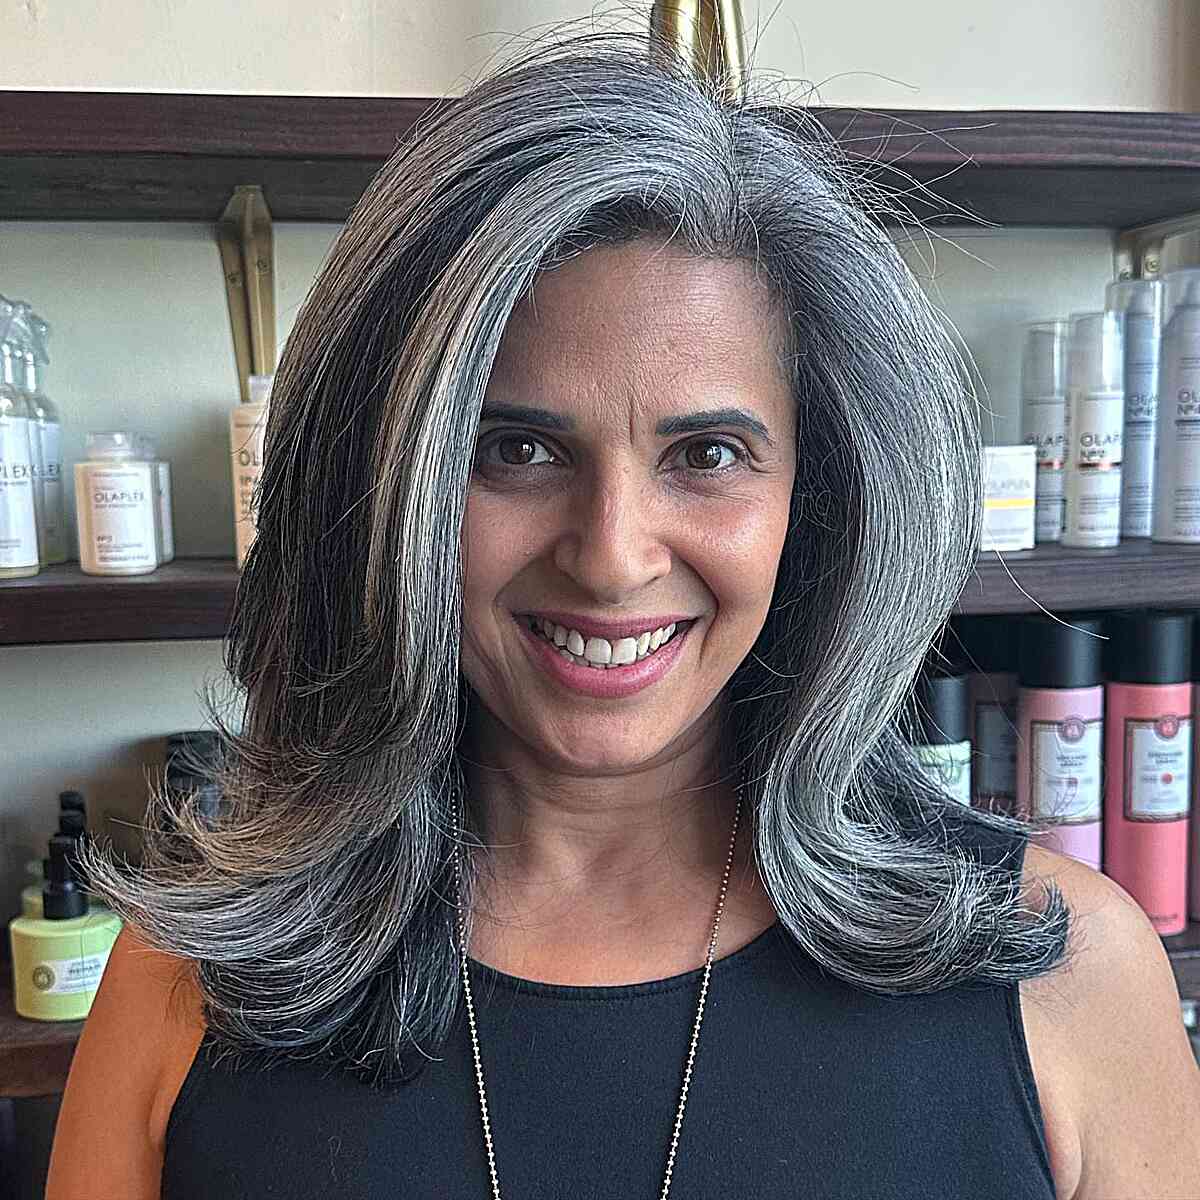 How to Dye Gray Hair? | glamot.com